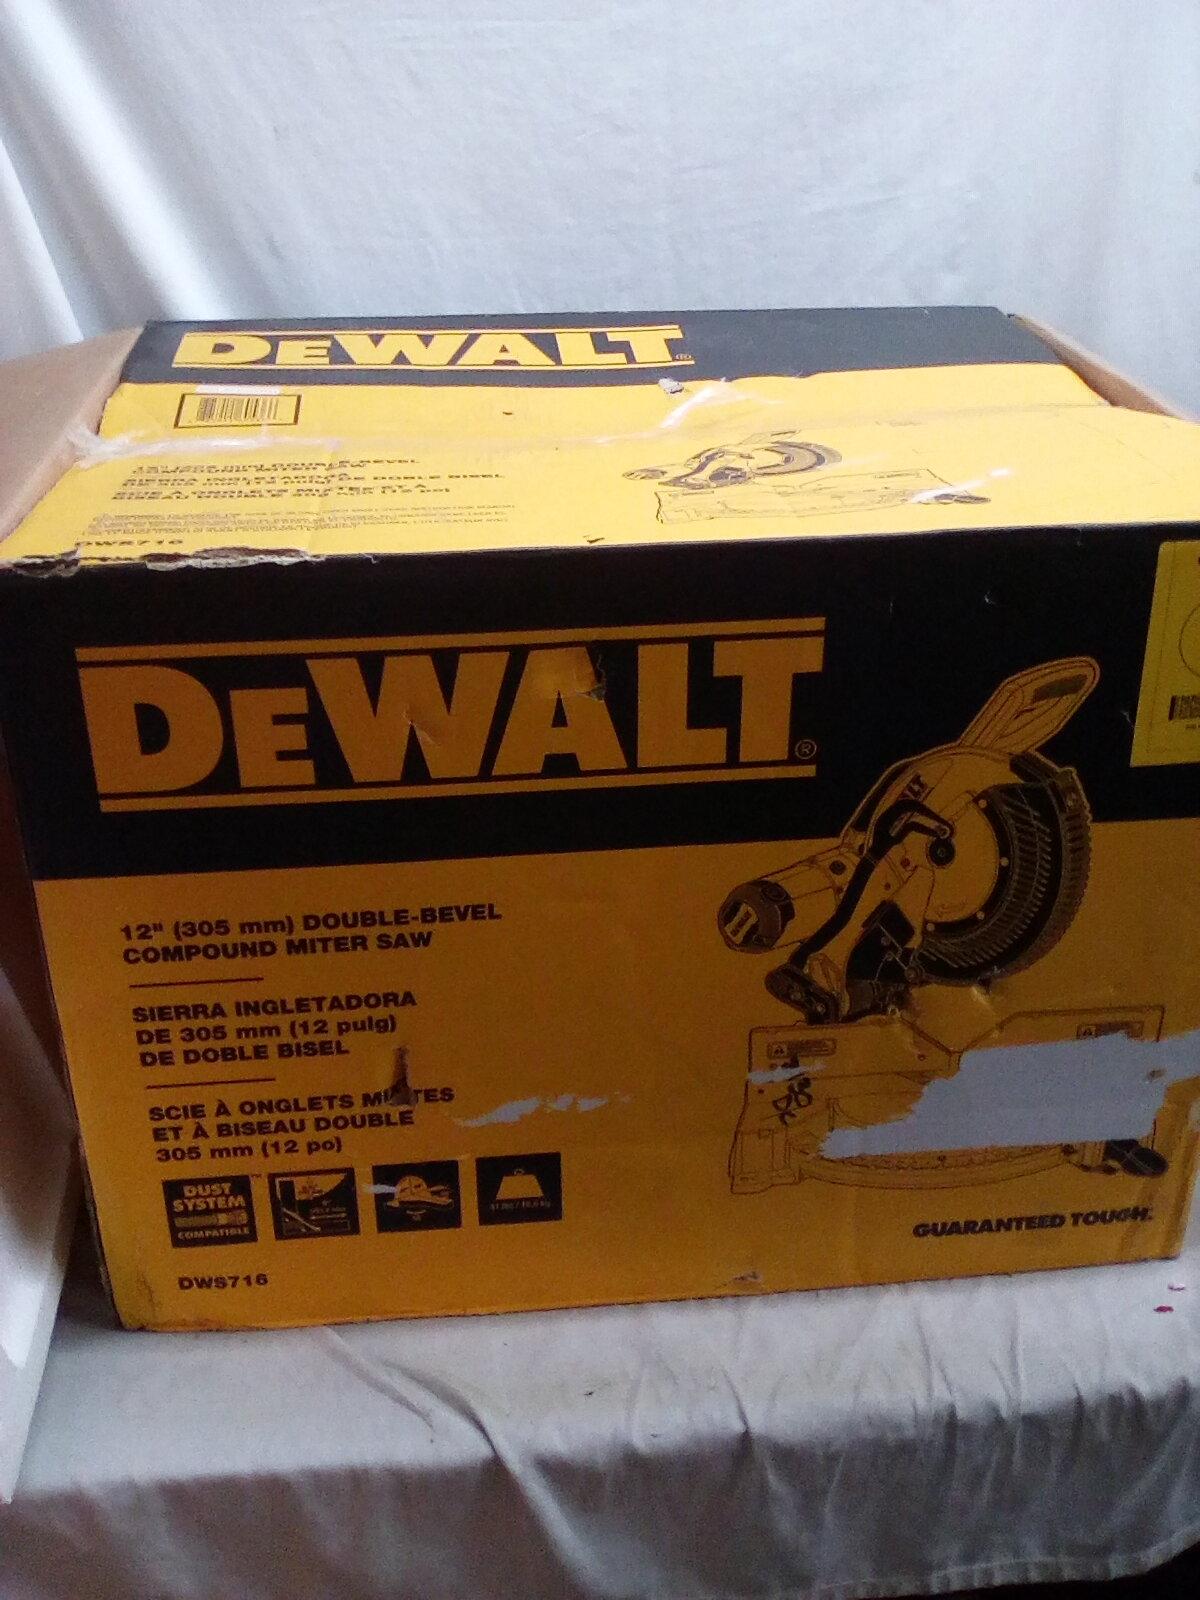 Dewalt 12” Compound Double Bevel Miter Saw in the Original Box